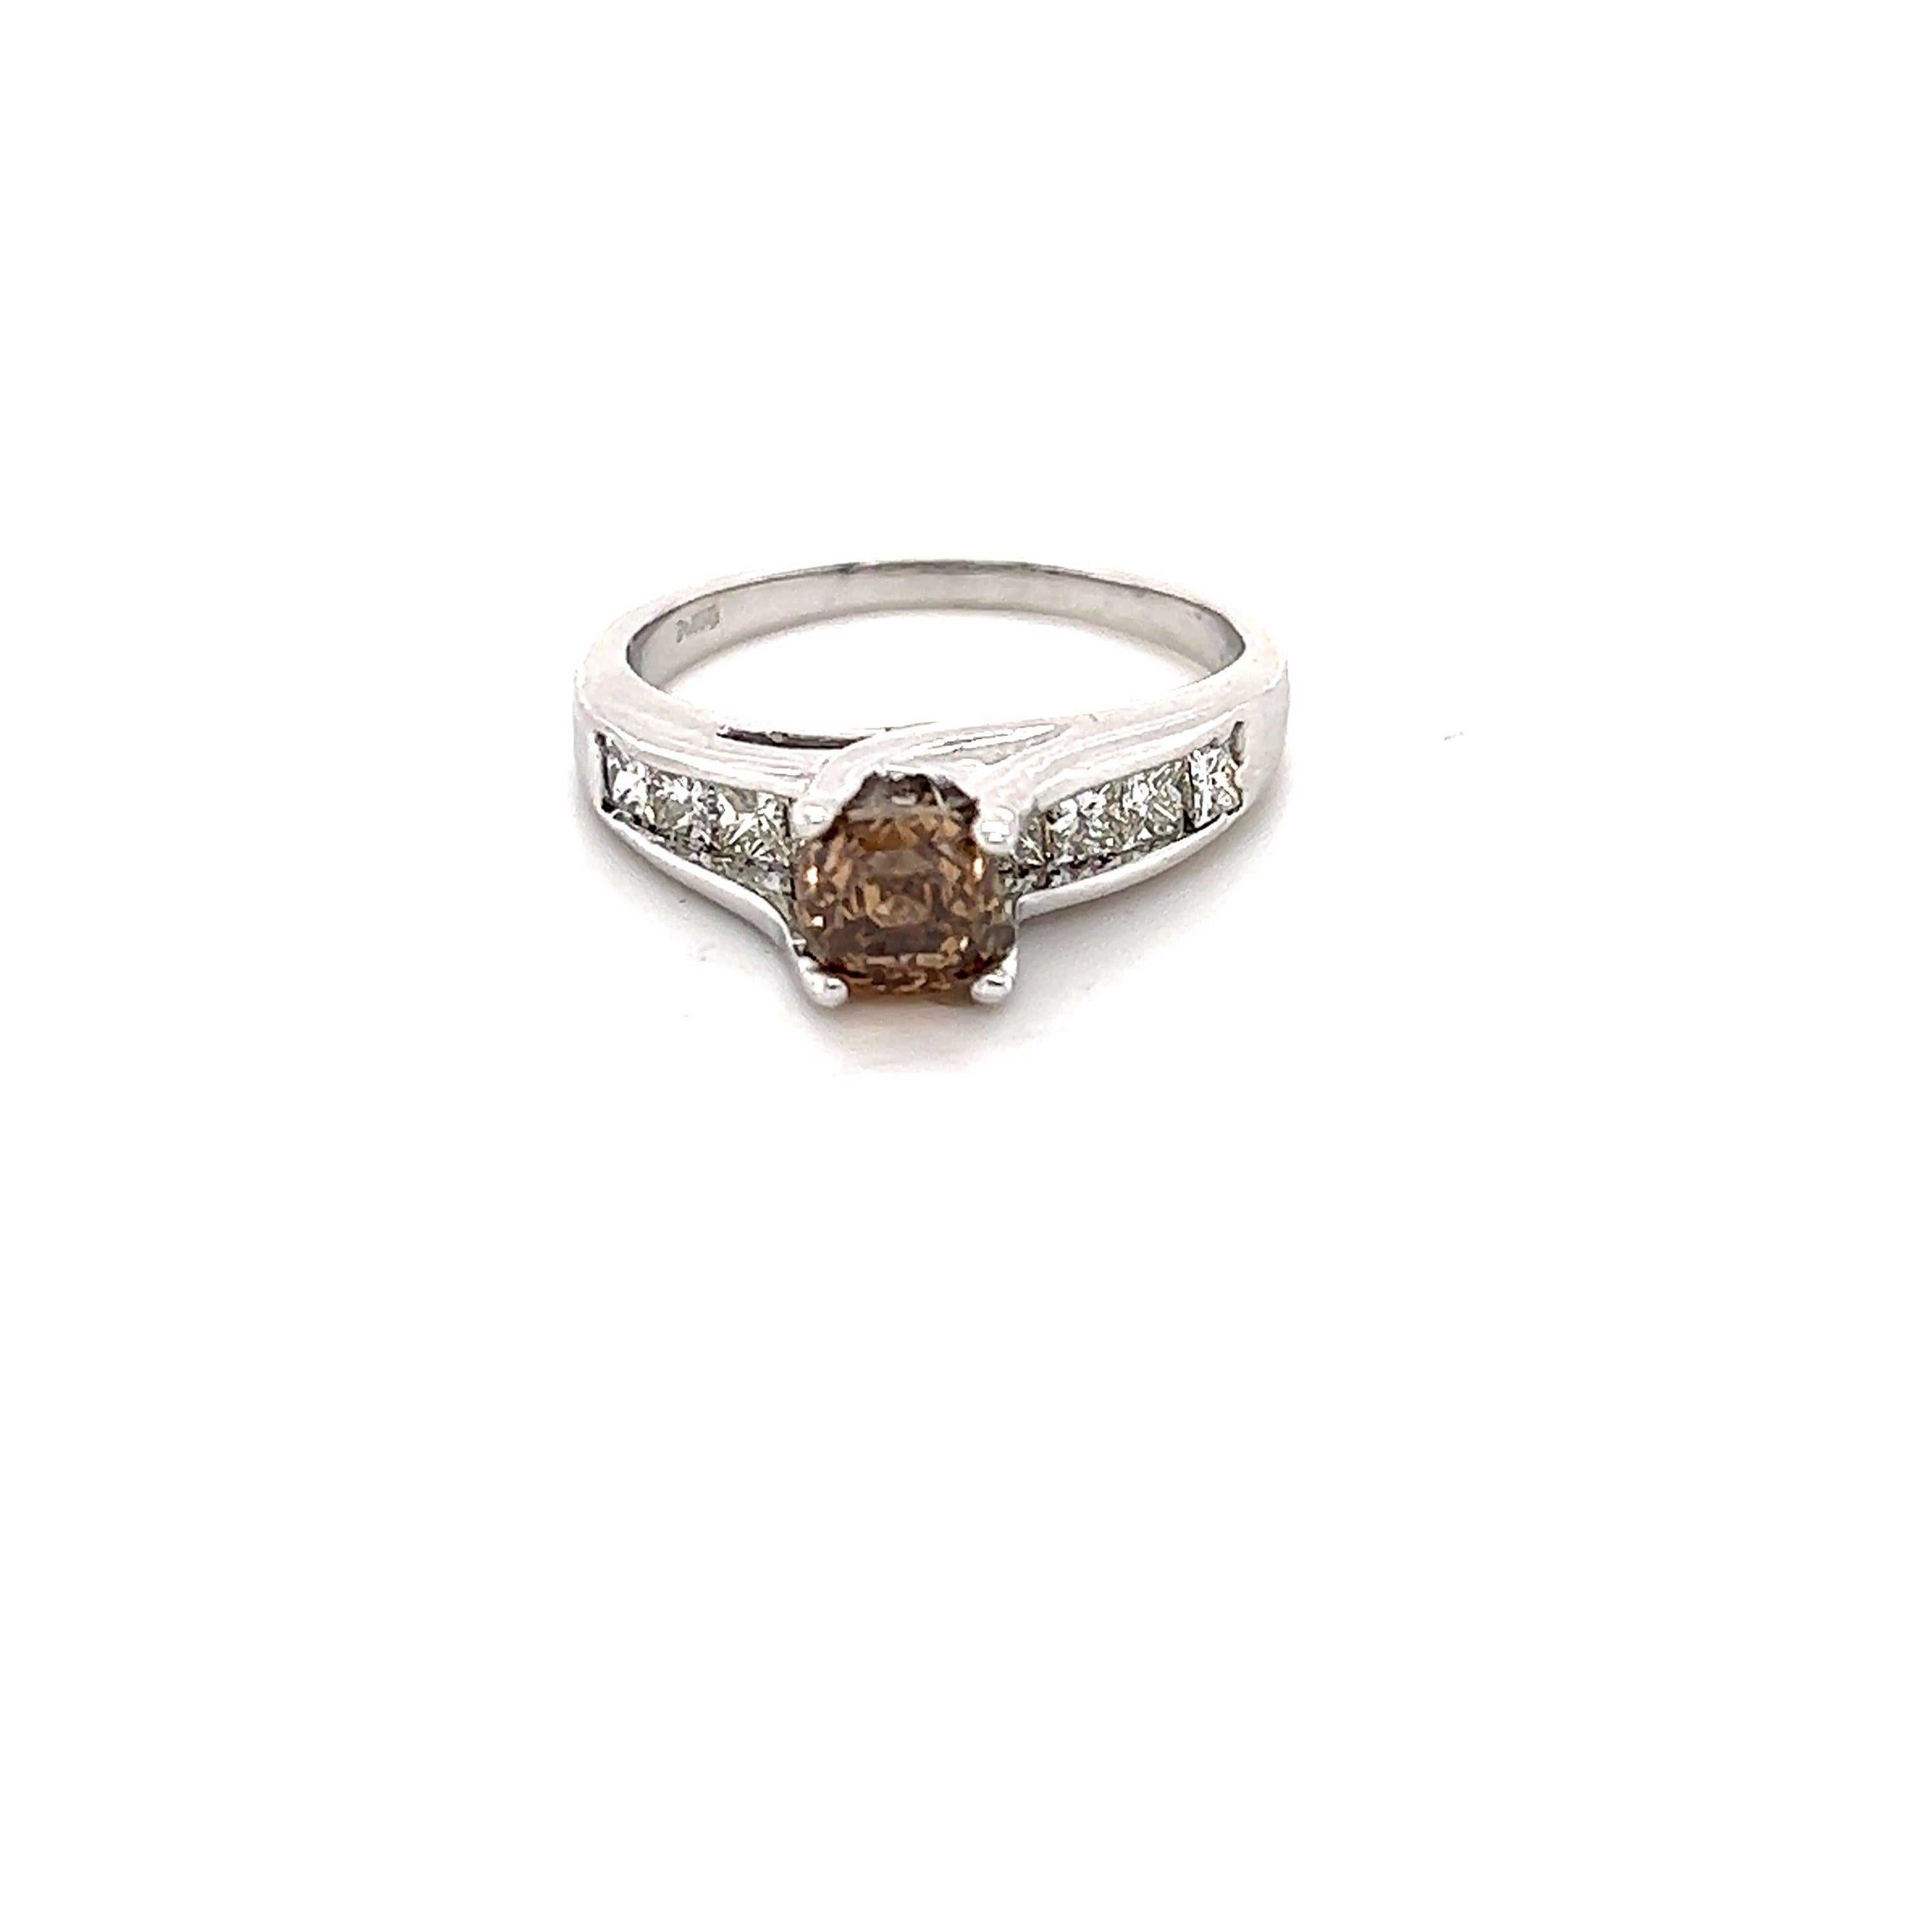 Dieser Ring hat einen Asscher Cut Brown Diamond, die 1,10 Karat mit einem VS Klarheit wiegt. Er hat 9 Diamanten im Princess-Schliff mit einem Gewicht von 0,85 Karat. Die Reinheit und Farbe der Diamanten sind VS-F. Das Gesamtkaratgewicht des Rings